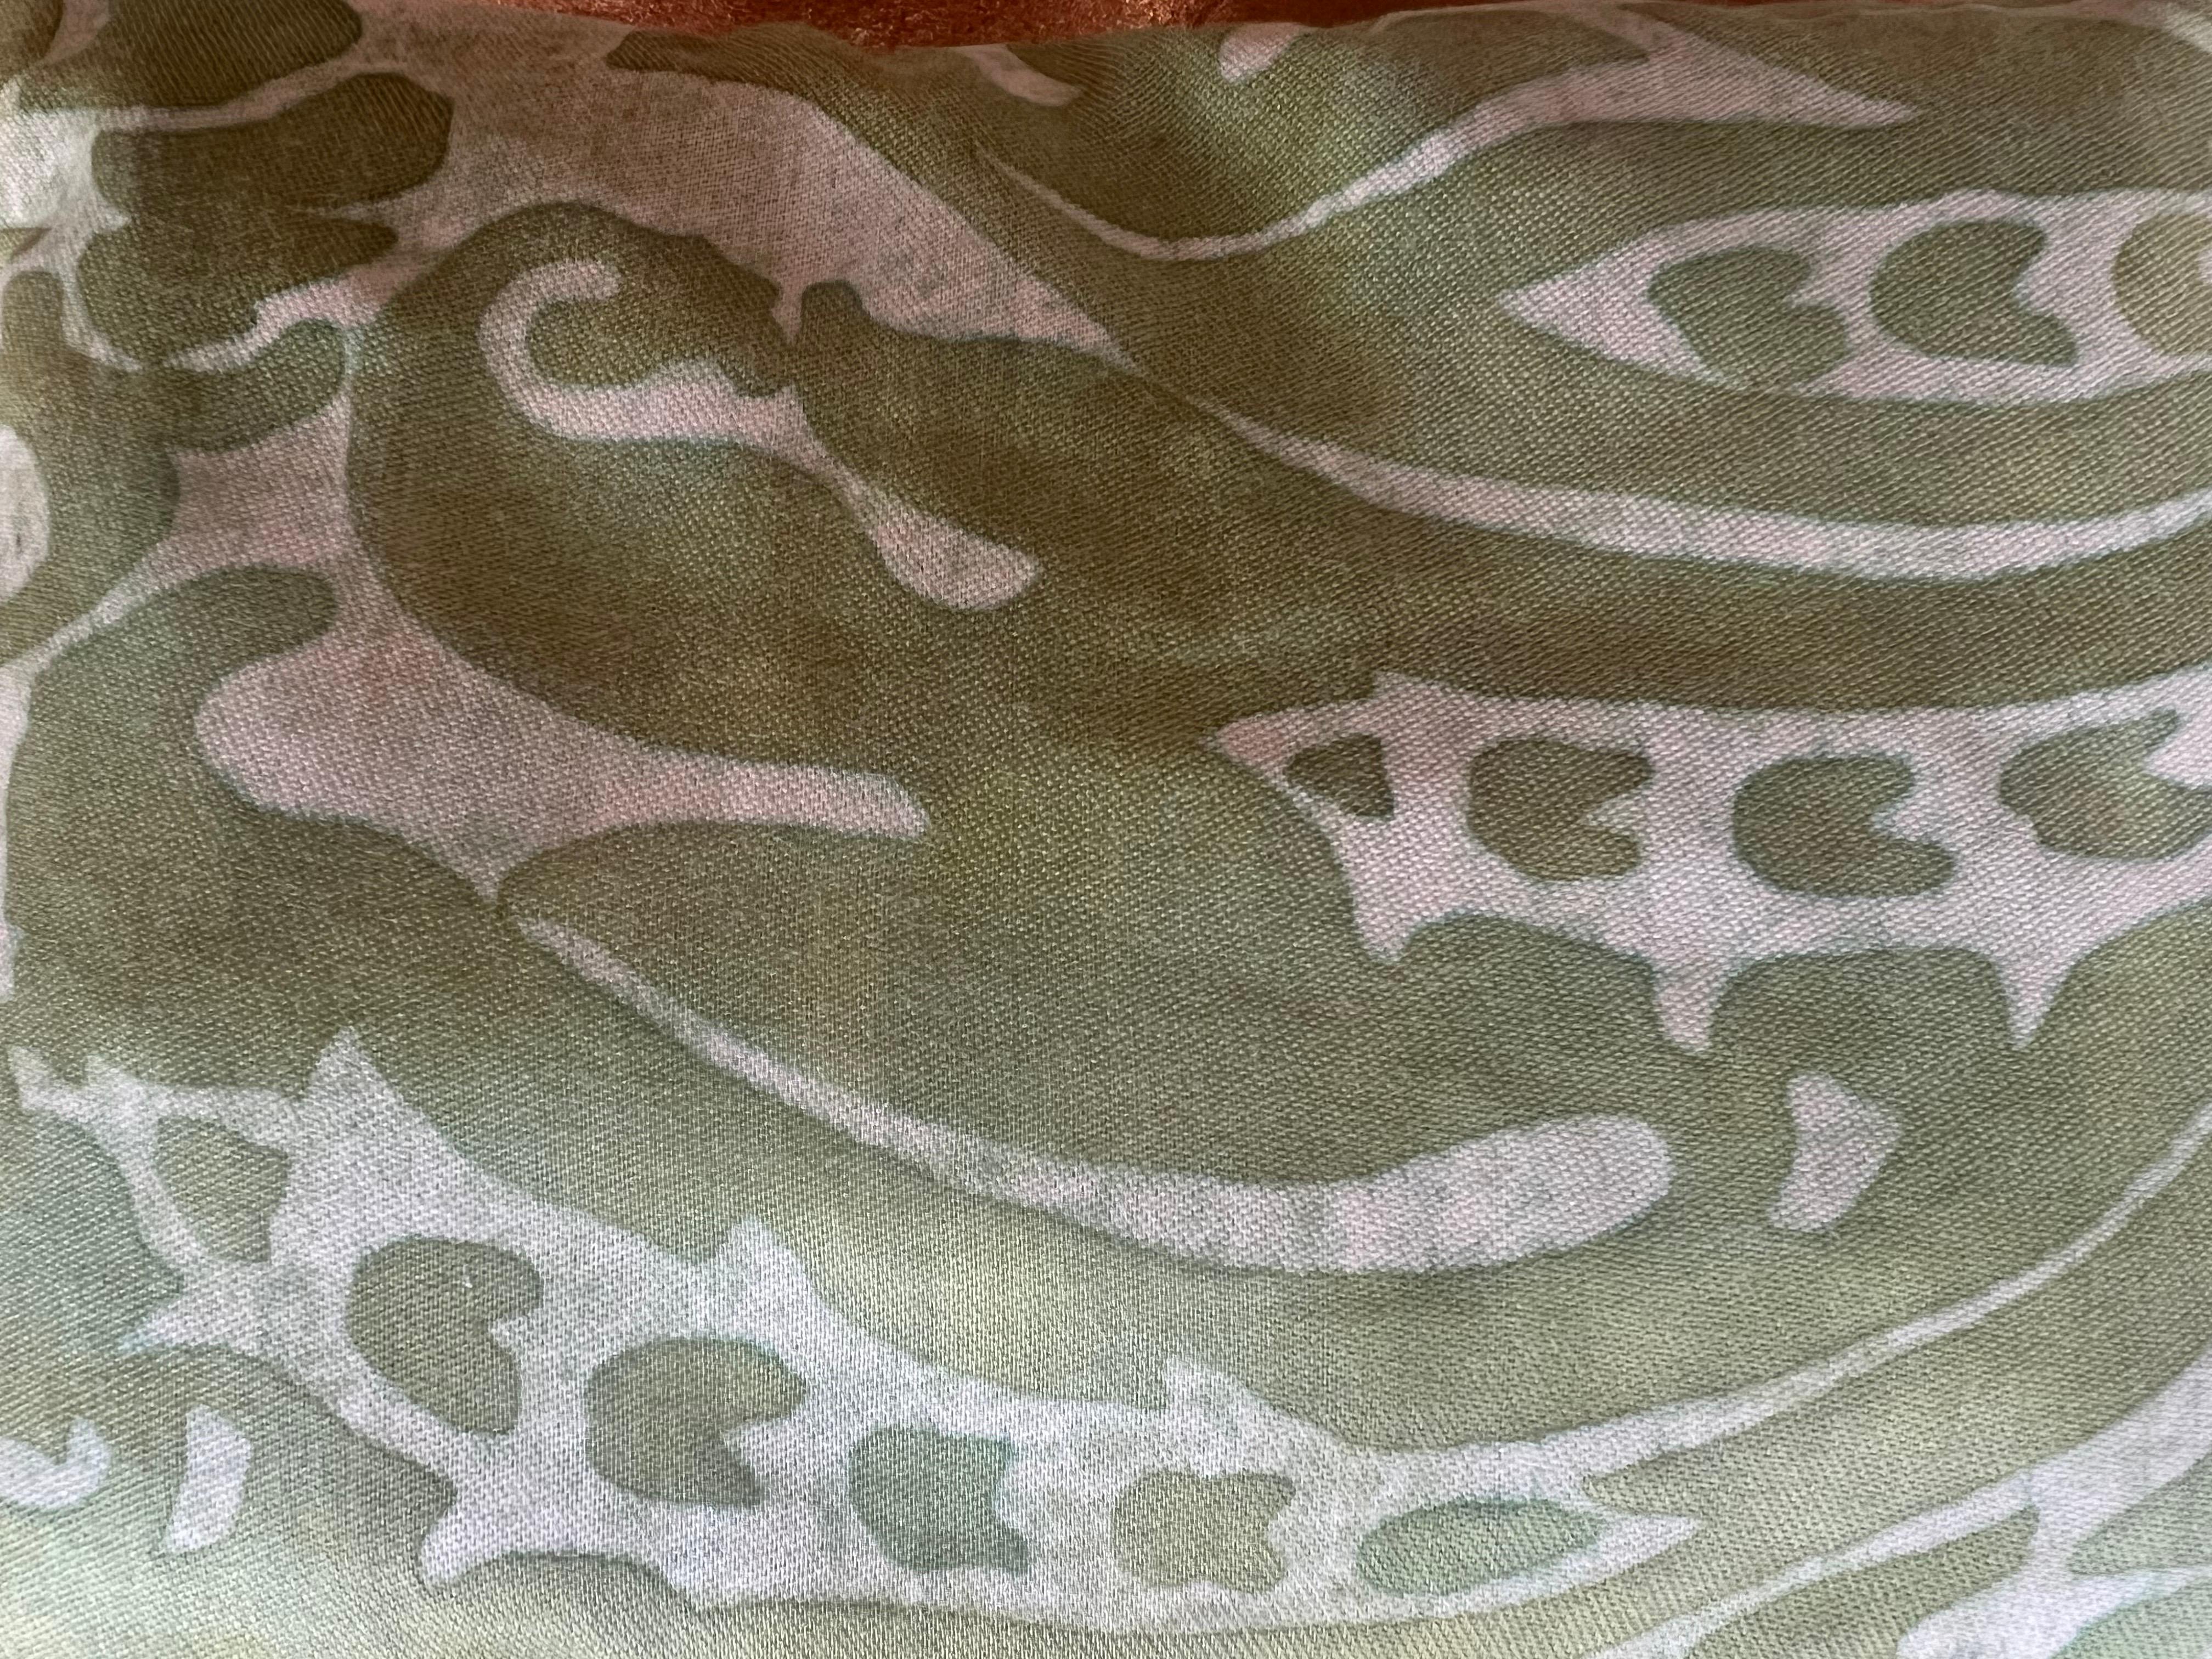 Ein mit Lavendel gefülltes Säckchen, hergestellt aus dem Stoff von Mariano Fortuny. Es zeichnet sich durch ein sanftes, aquarellartiges grünes Muster auf weißem Hintergrund aus, das sowohl aromatisch als auch optisch ansprechend ist.